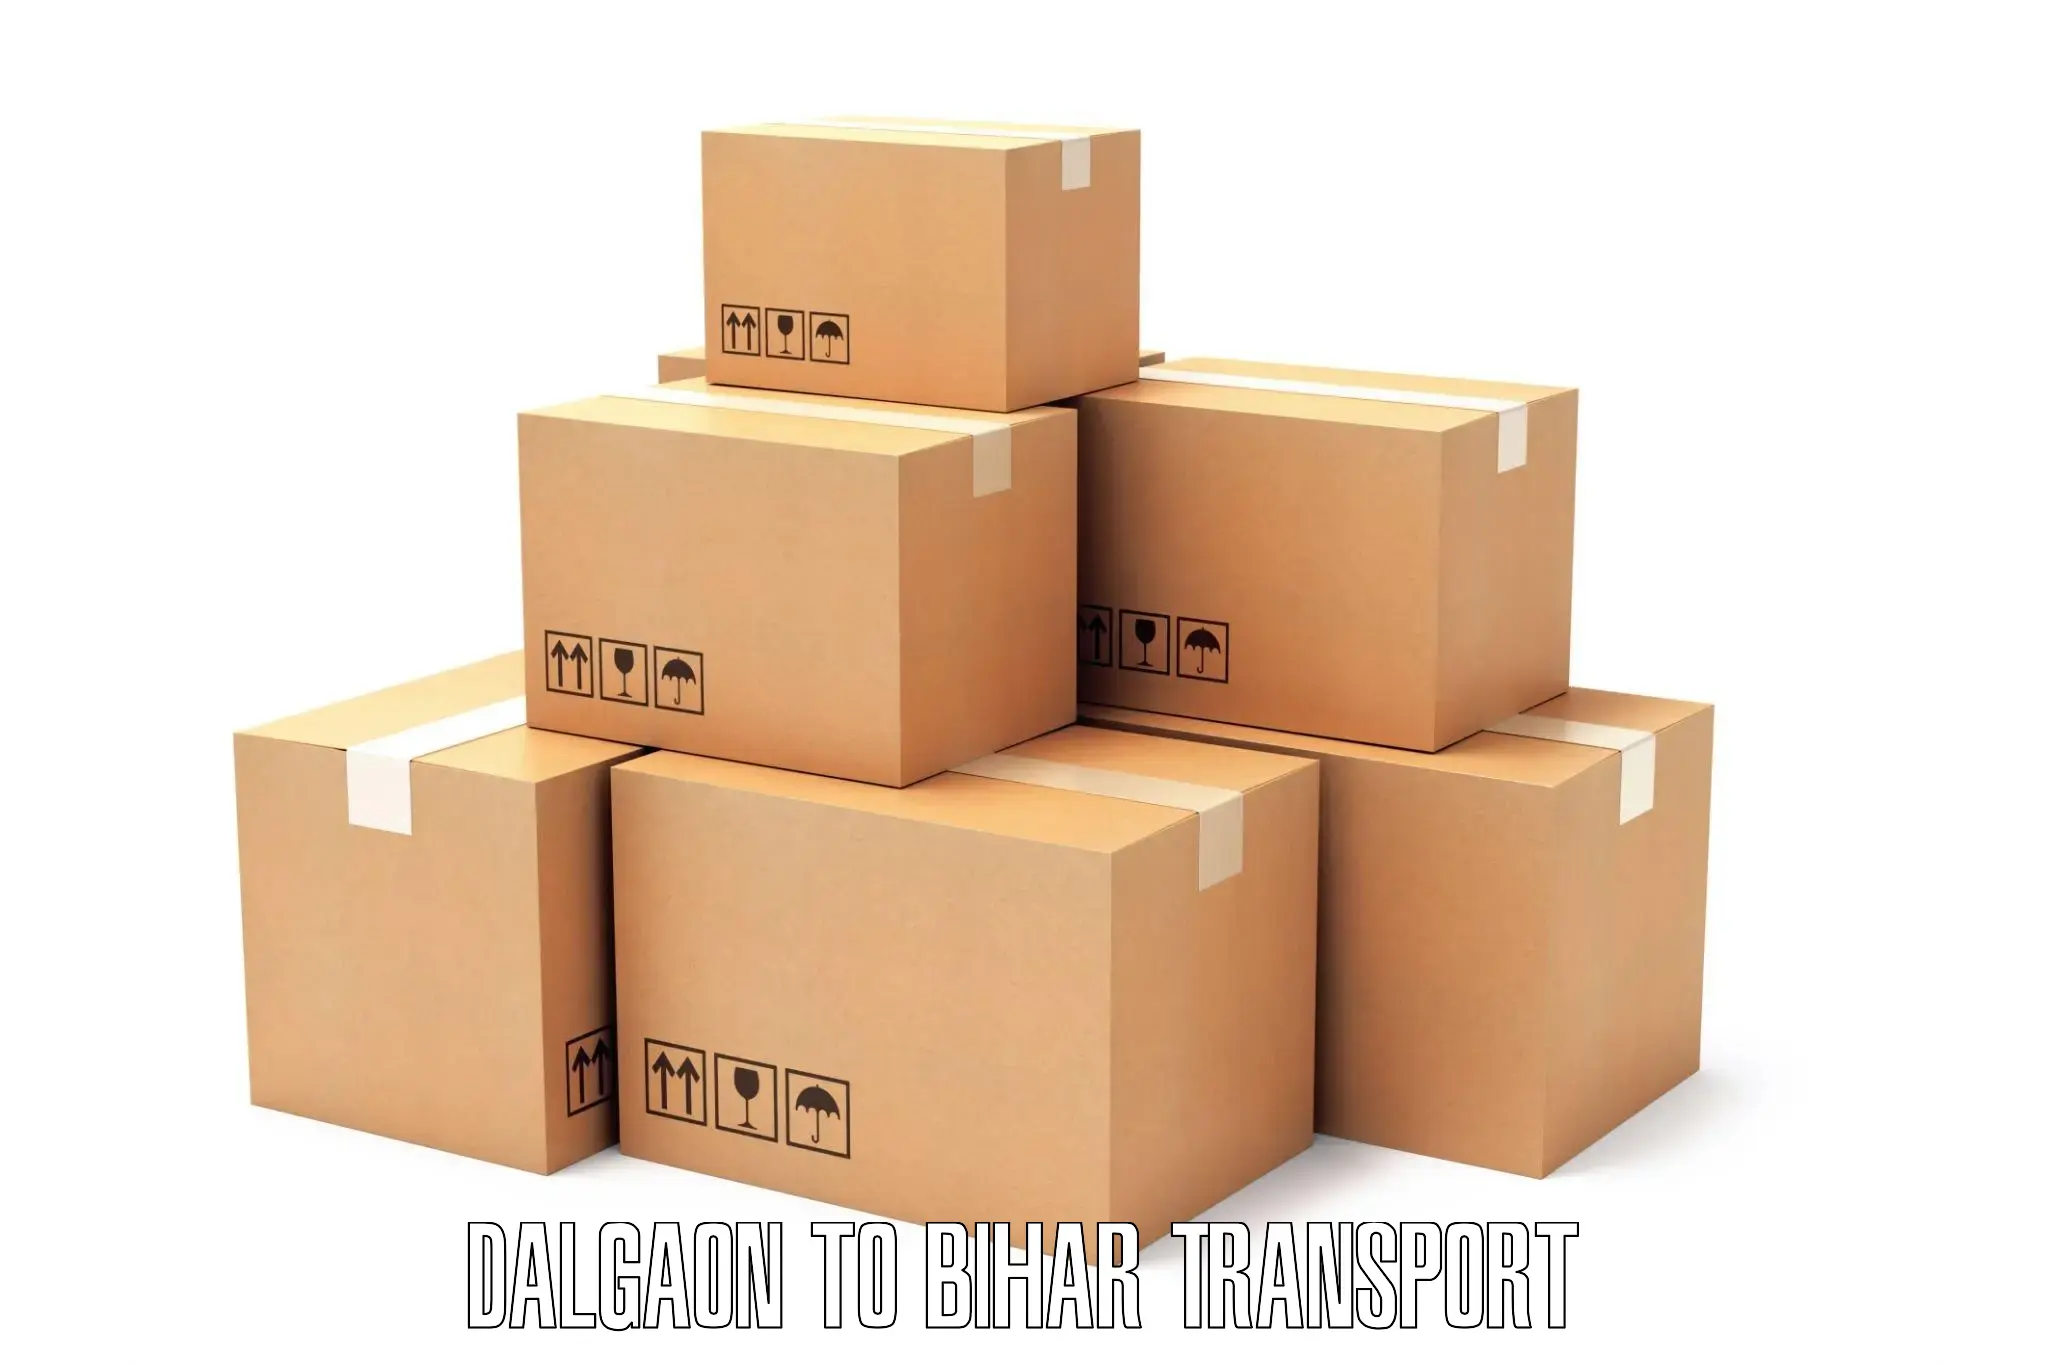 Shipping partner Dalgaon to Bihar